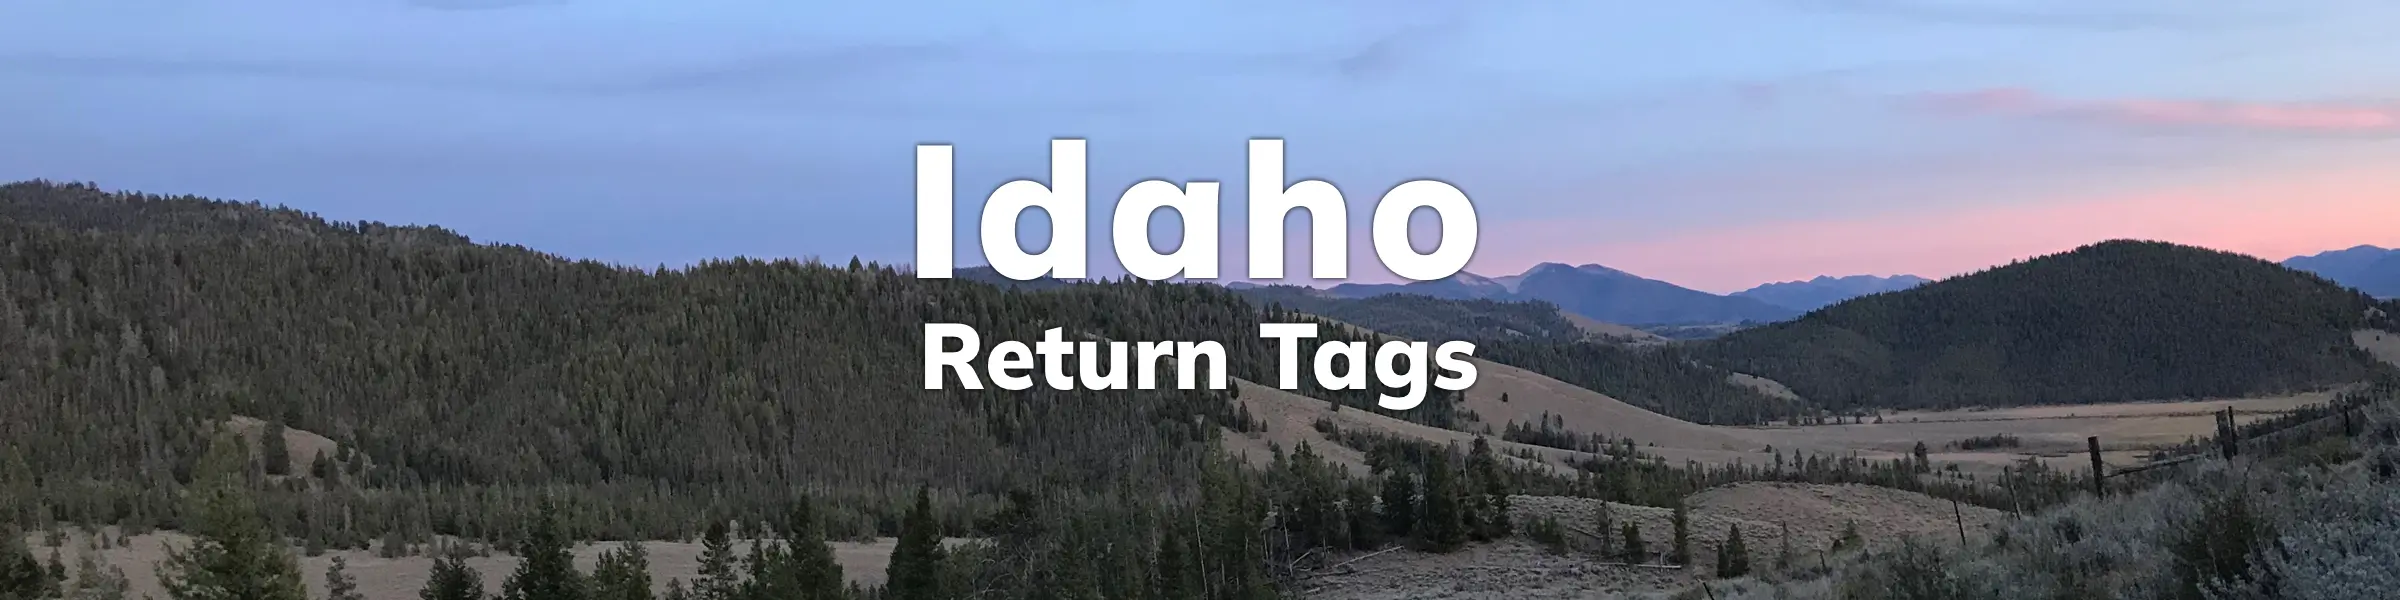 Idaho Return Tags